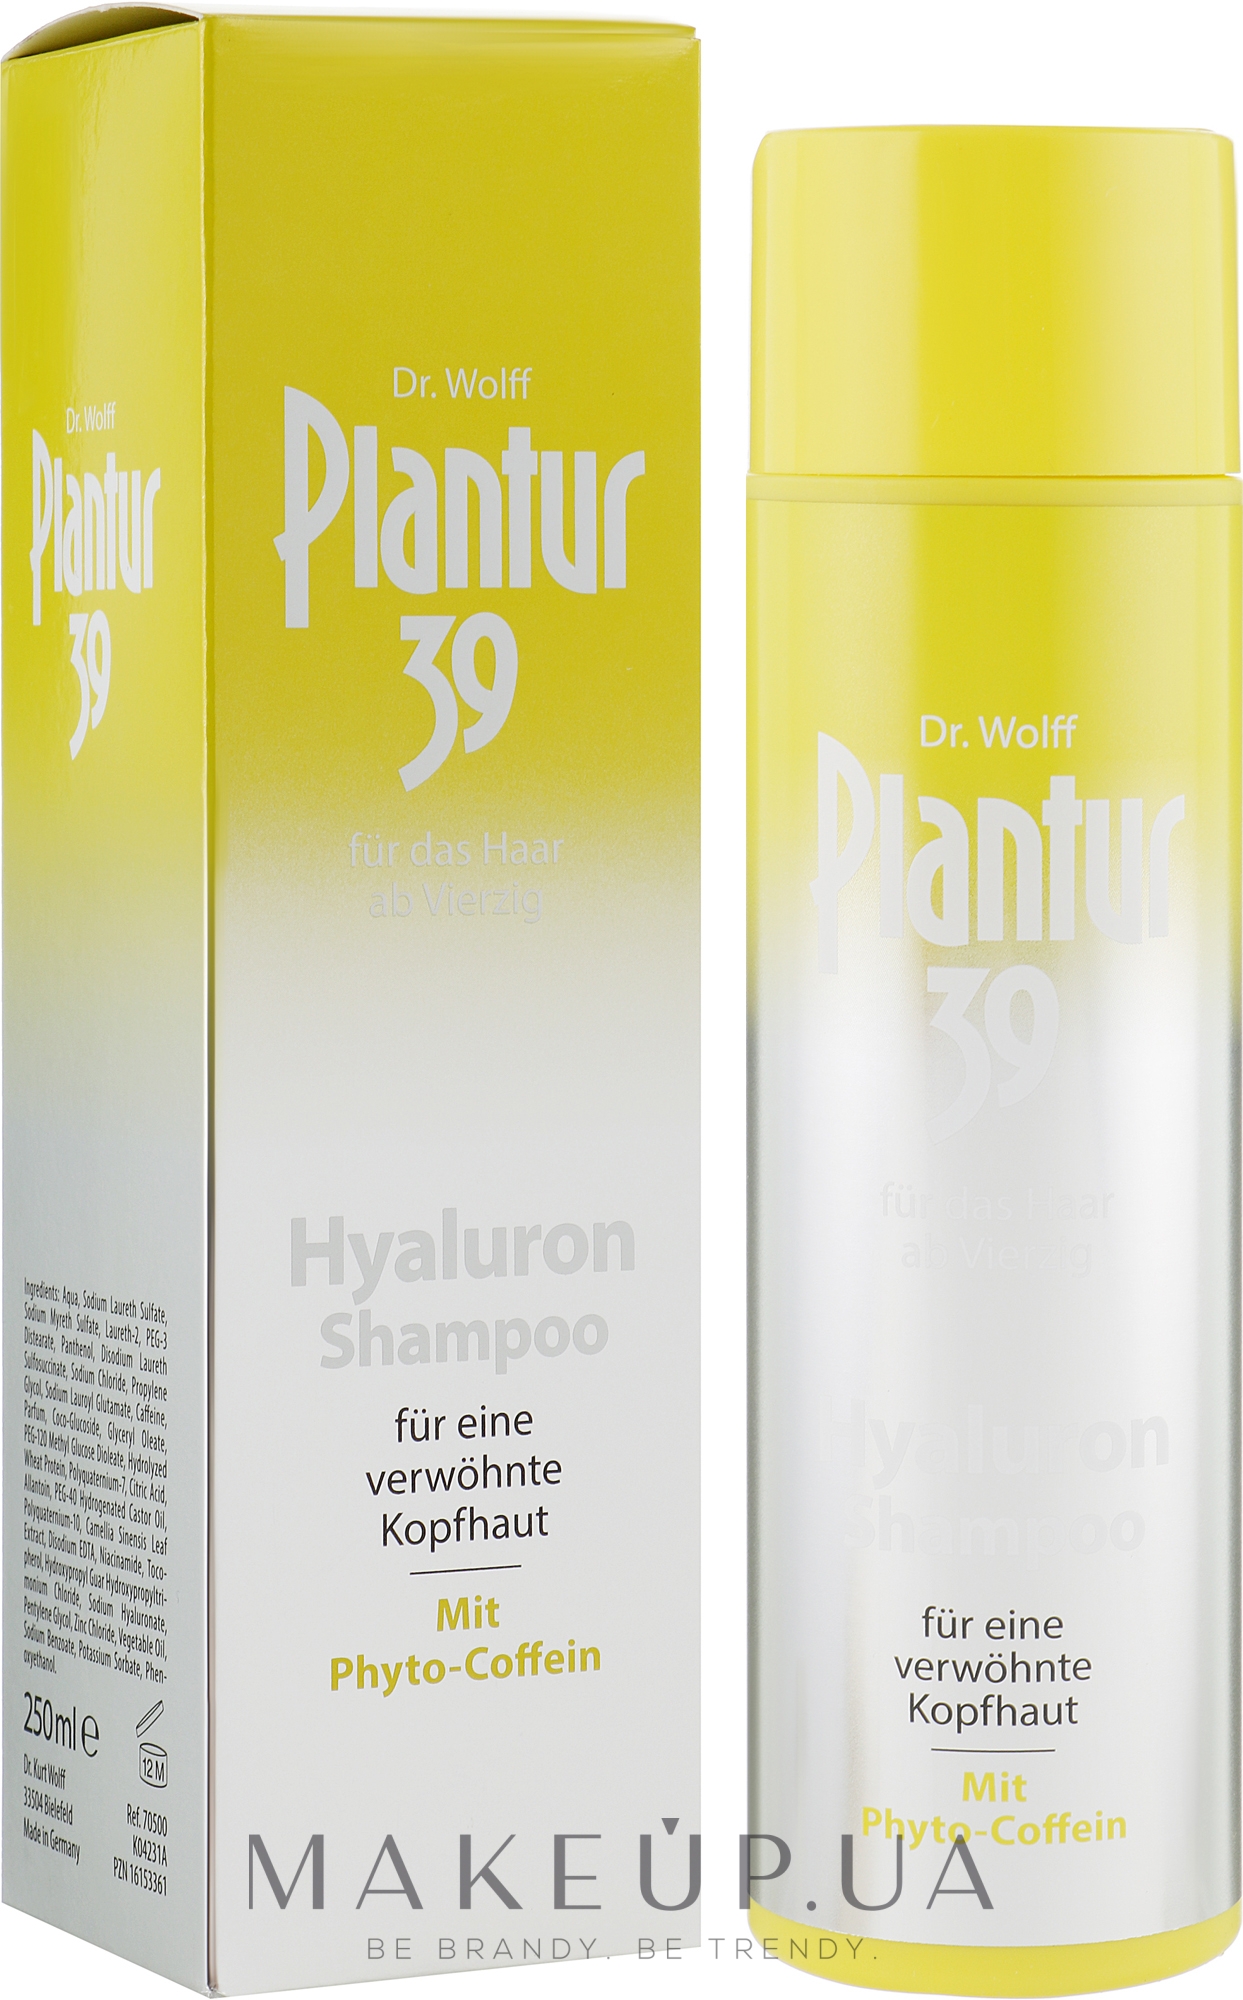 Увлажняющий шампунь от выпадения волос с гиалуроном и кофеином - Plantur 39 Hyaluronic Shampoo — фото 250ml